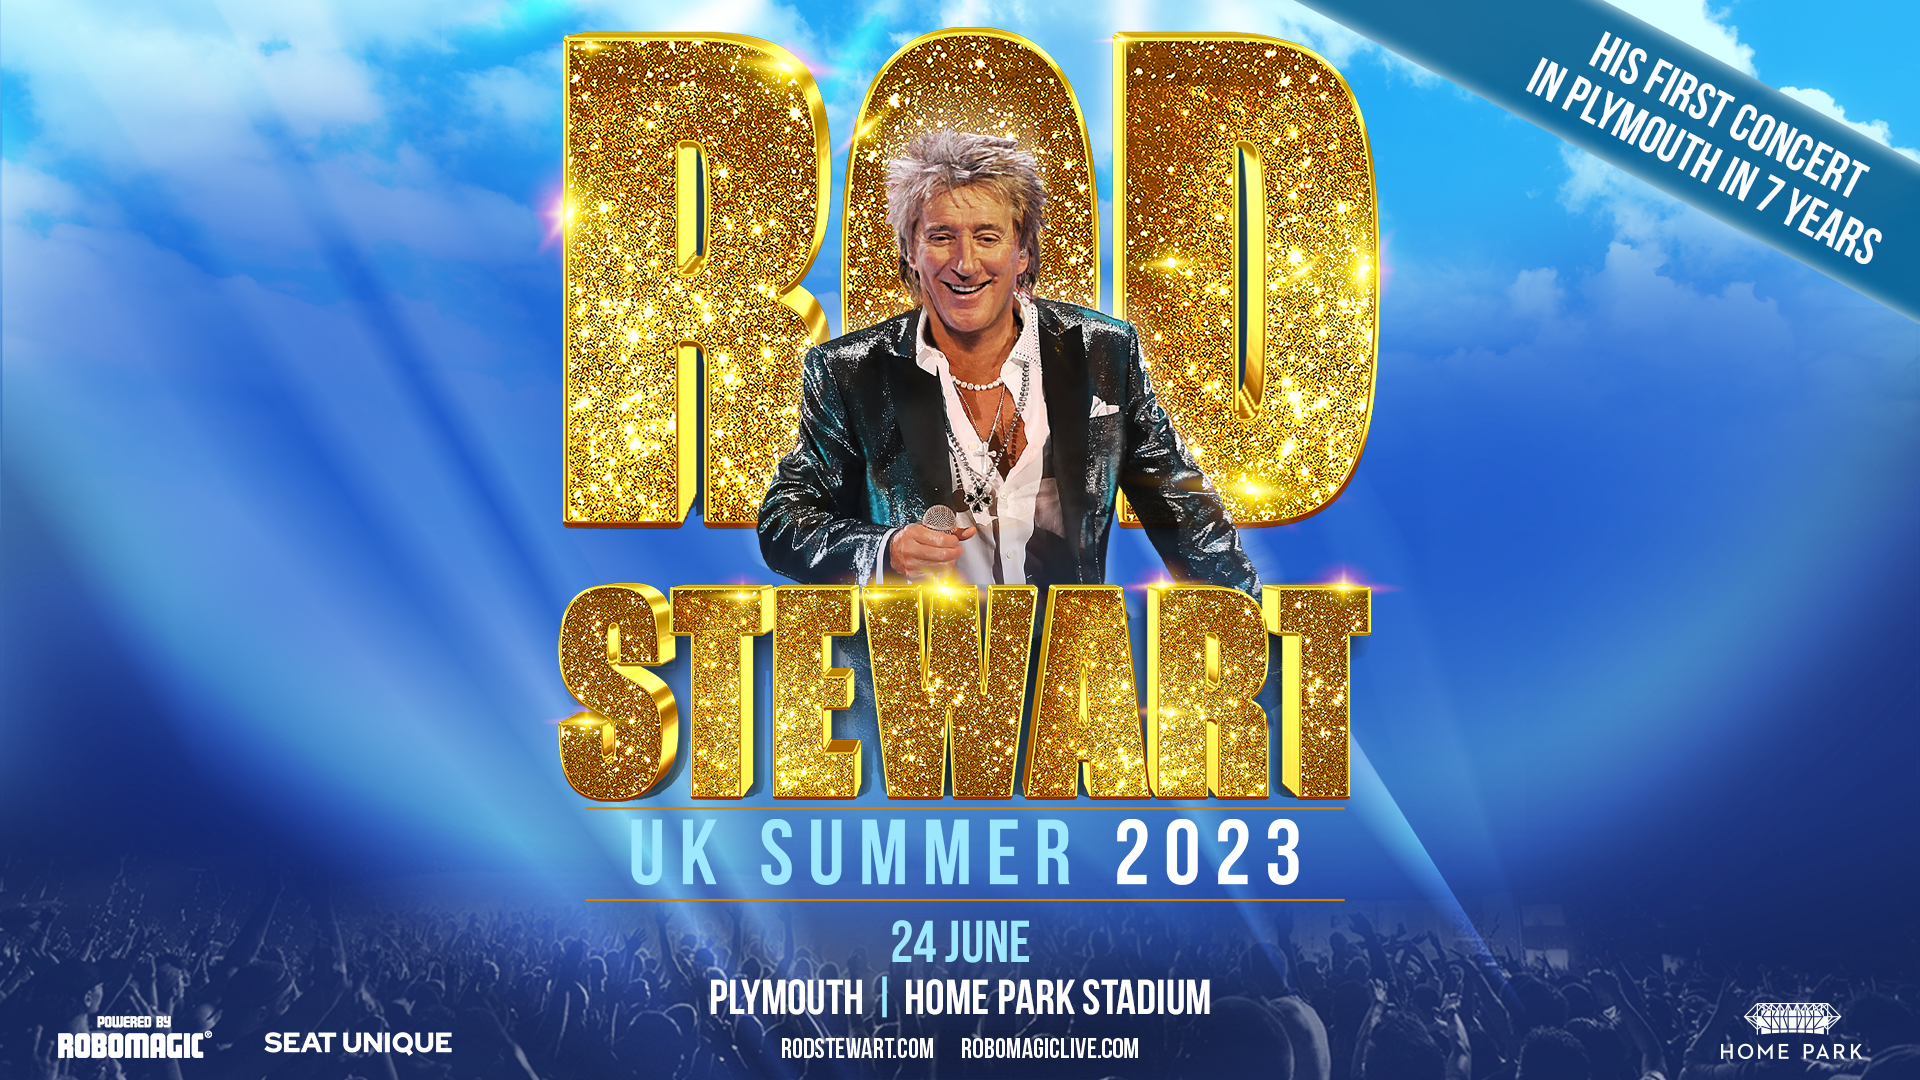 Sir Rod Stewart returns to Home Park Stadium